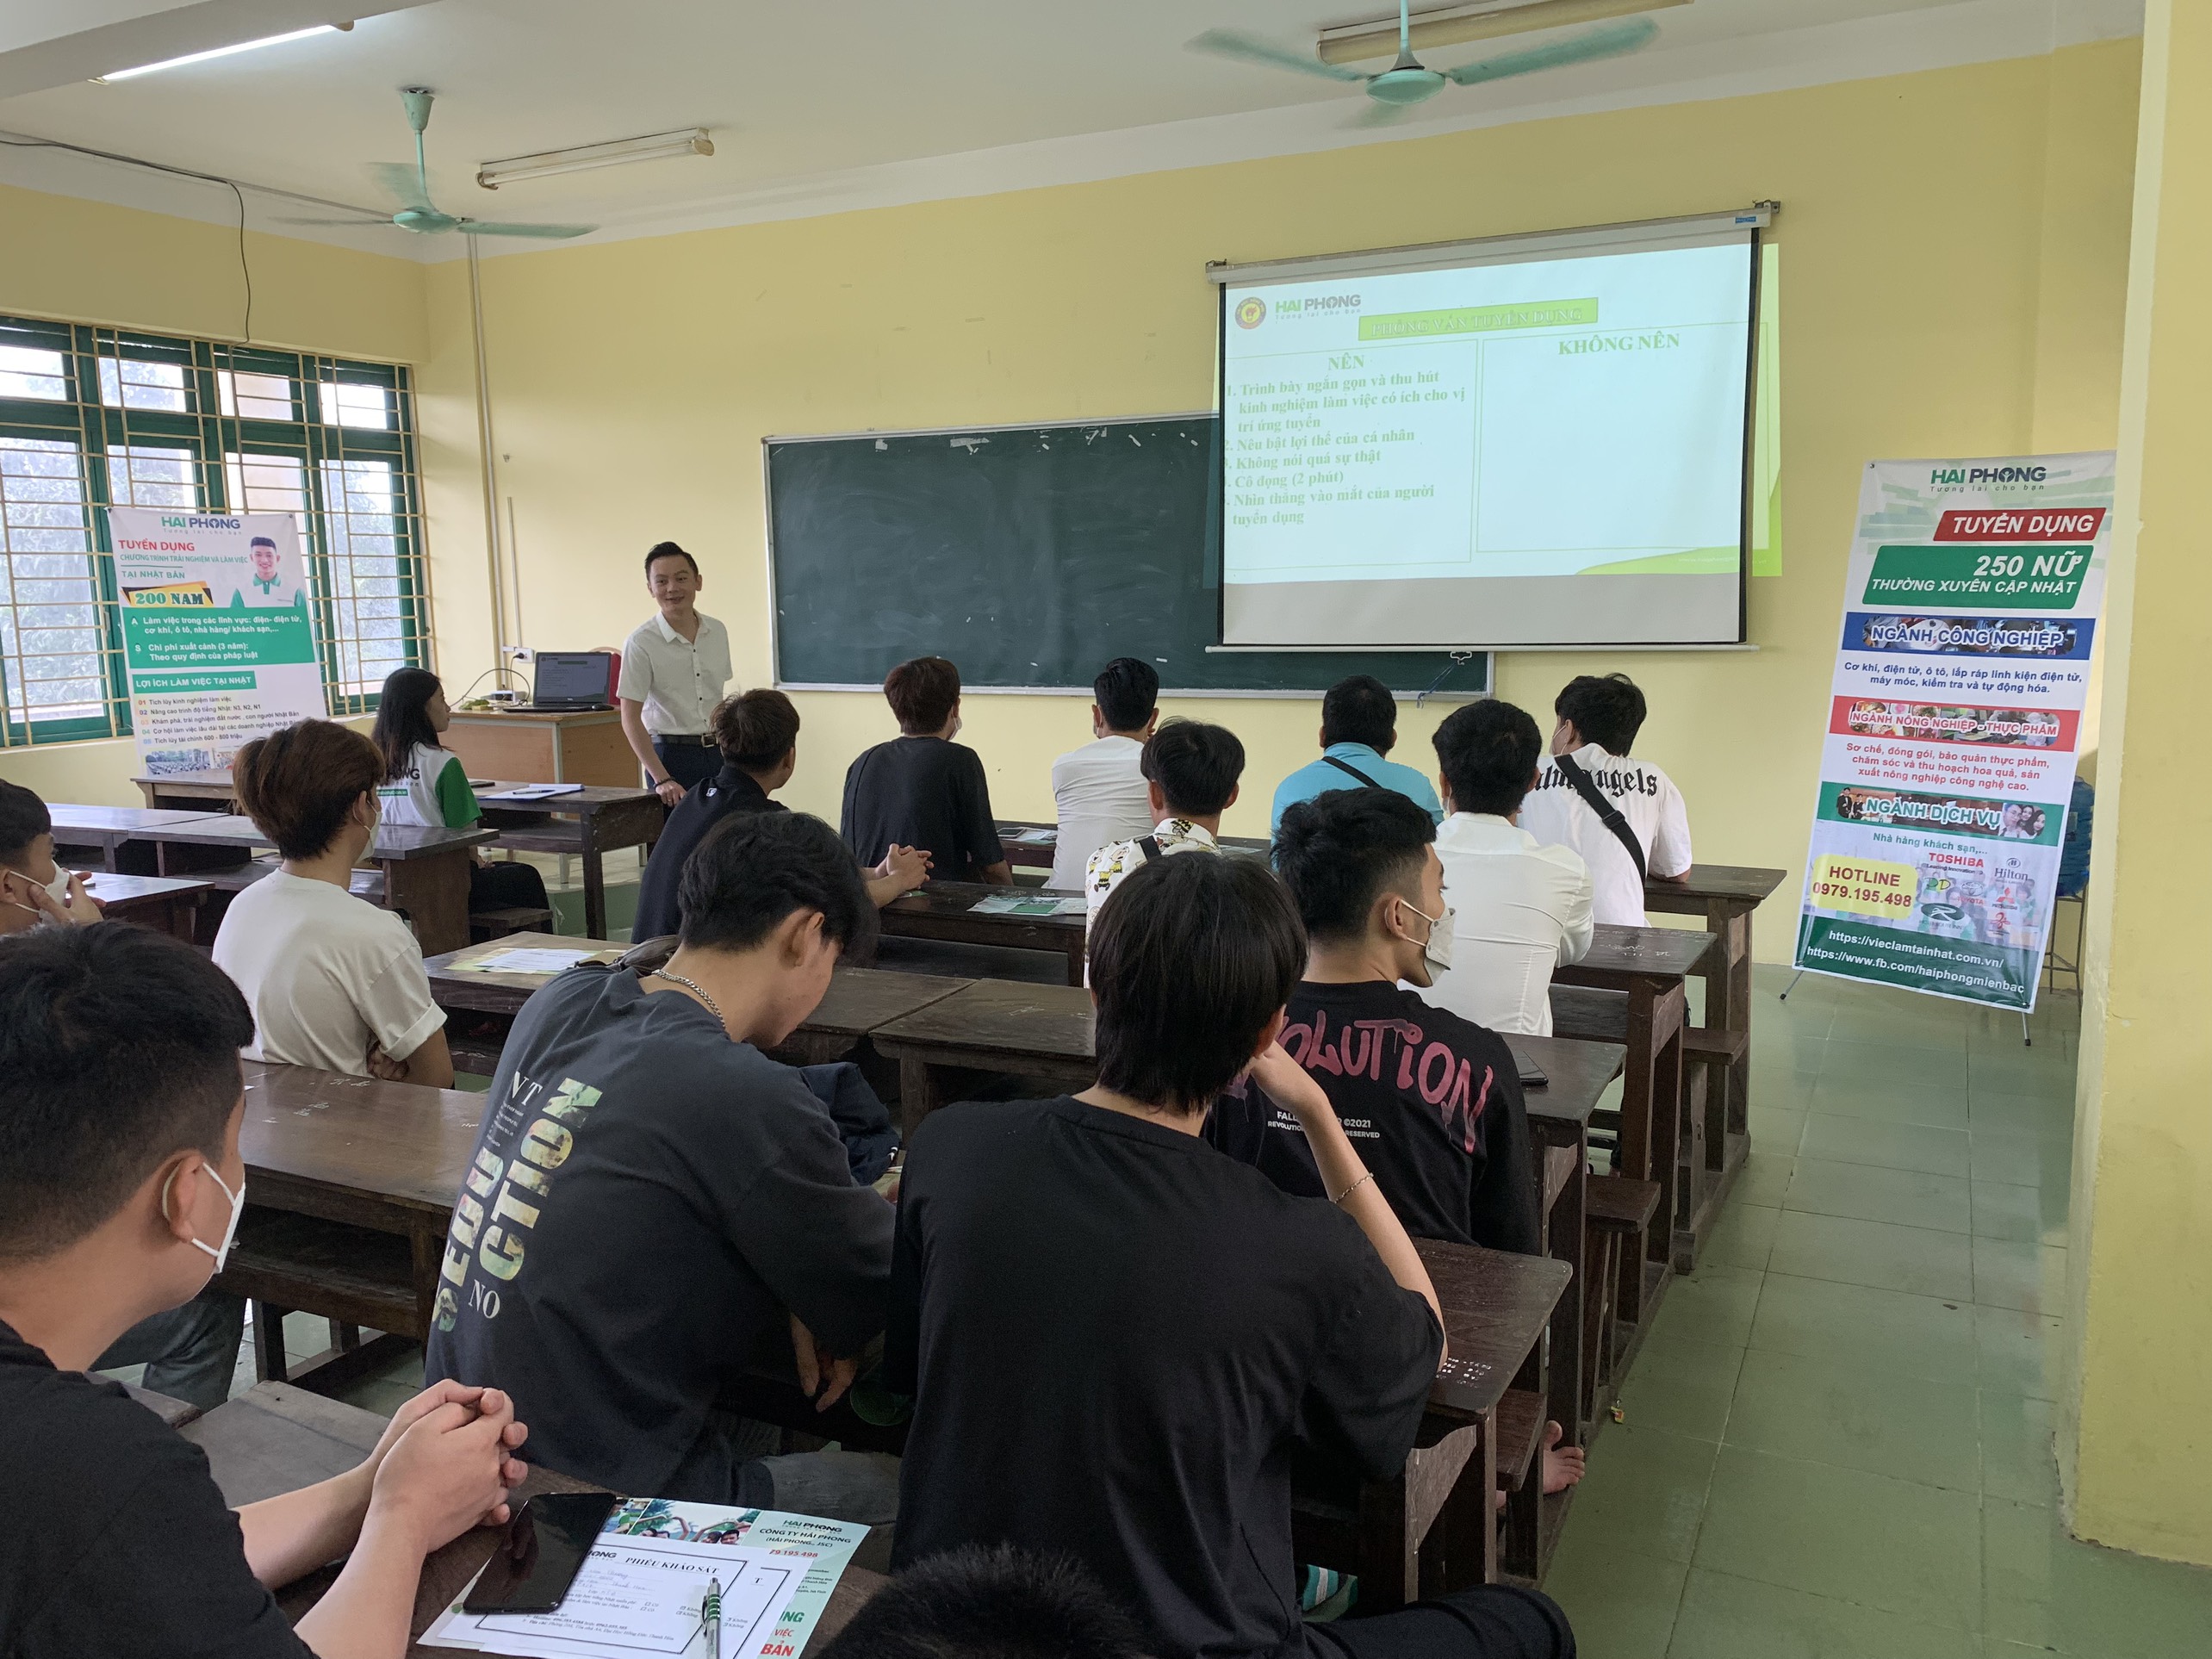 Khoa Kỹ thuật công nghệ phối hợp Công ty TNHH MTV Hải Phong tổ chức Chương trình giới thiệu việc làm, định hướng nghề nghiệp cho sinh viên